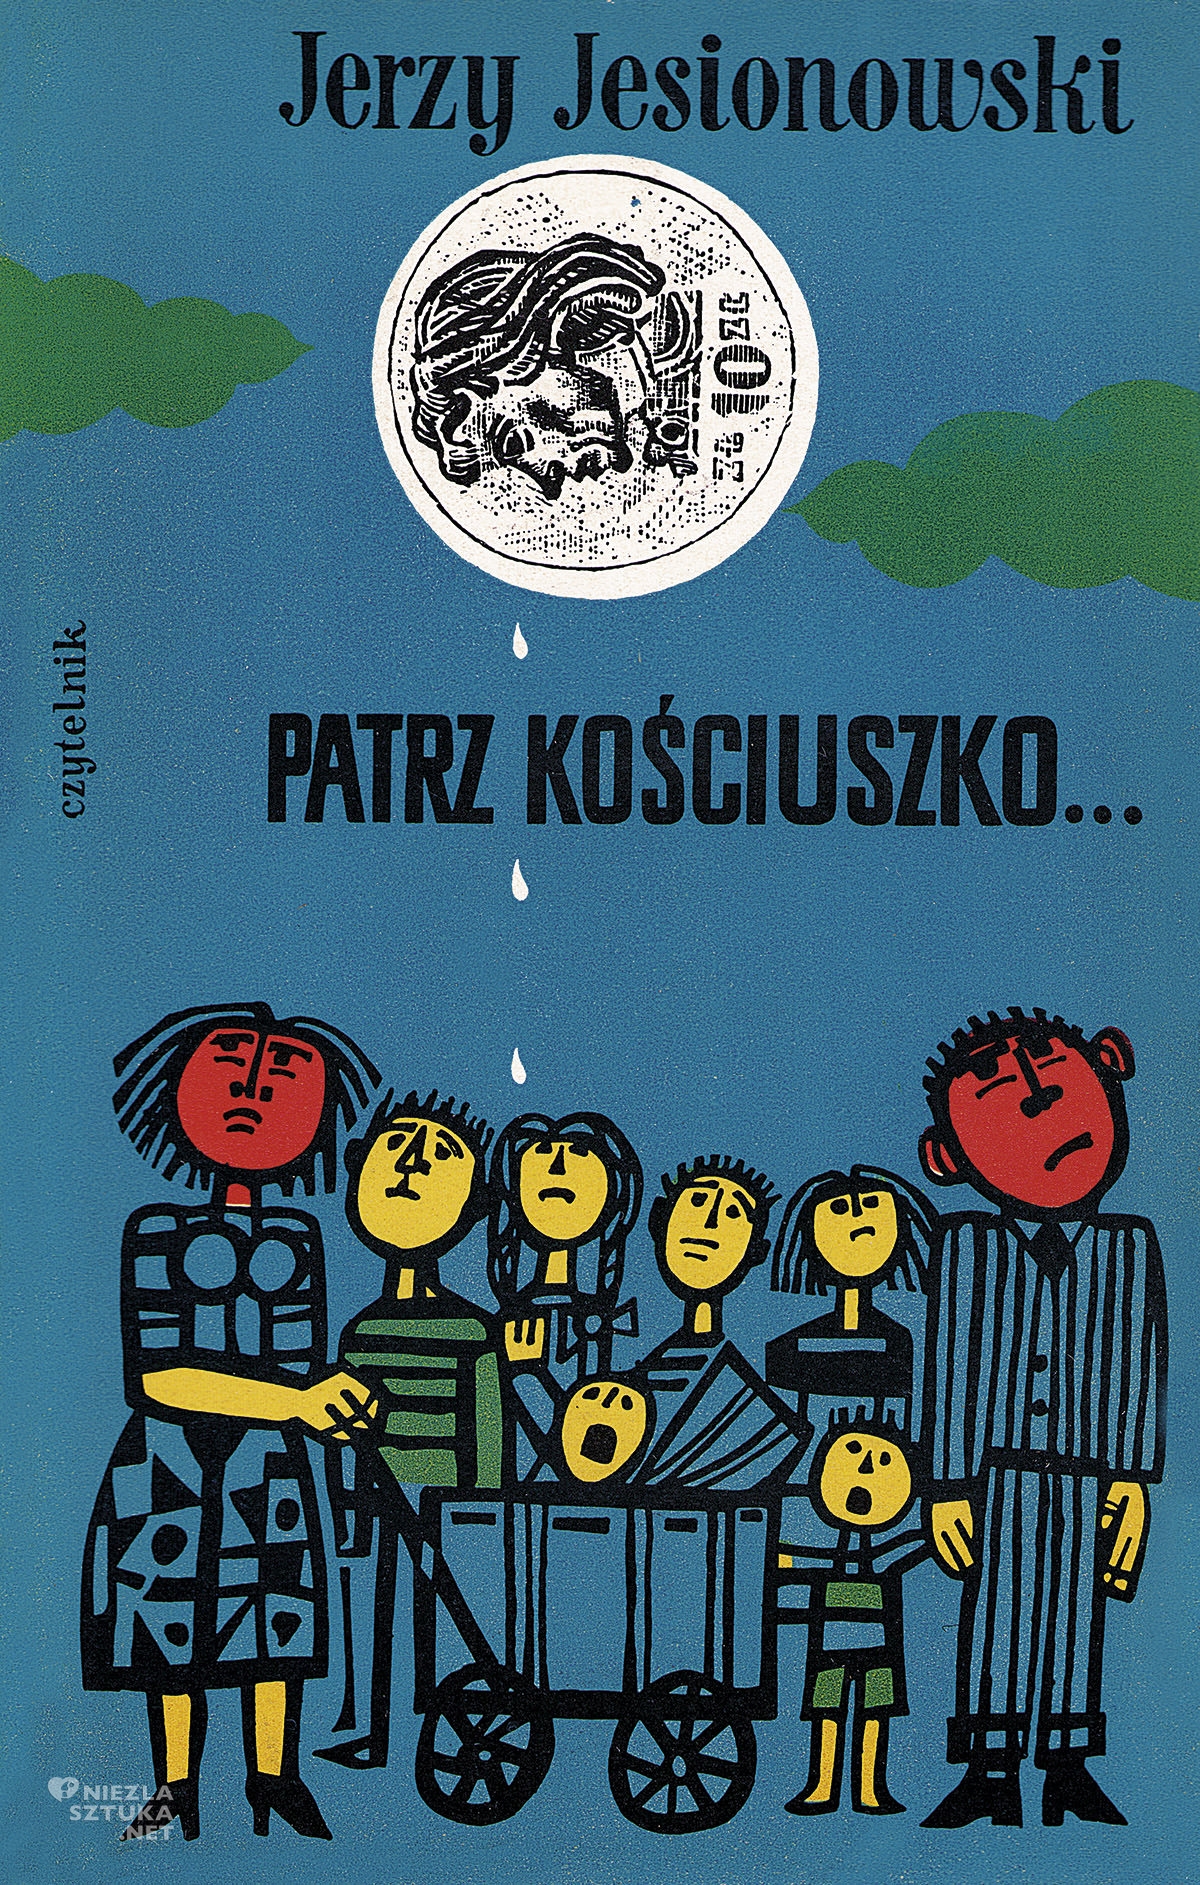 Marian Stachurski, Jerzy Jesionowski, Patrz Kościuszko, polski ilustrator, polska ilustracja, plakat, niezła sztuka